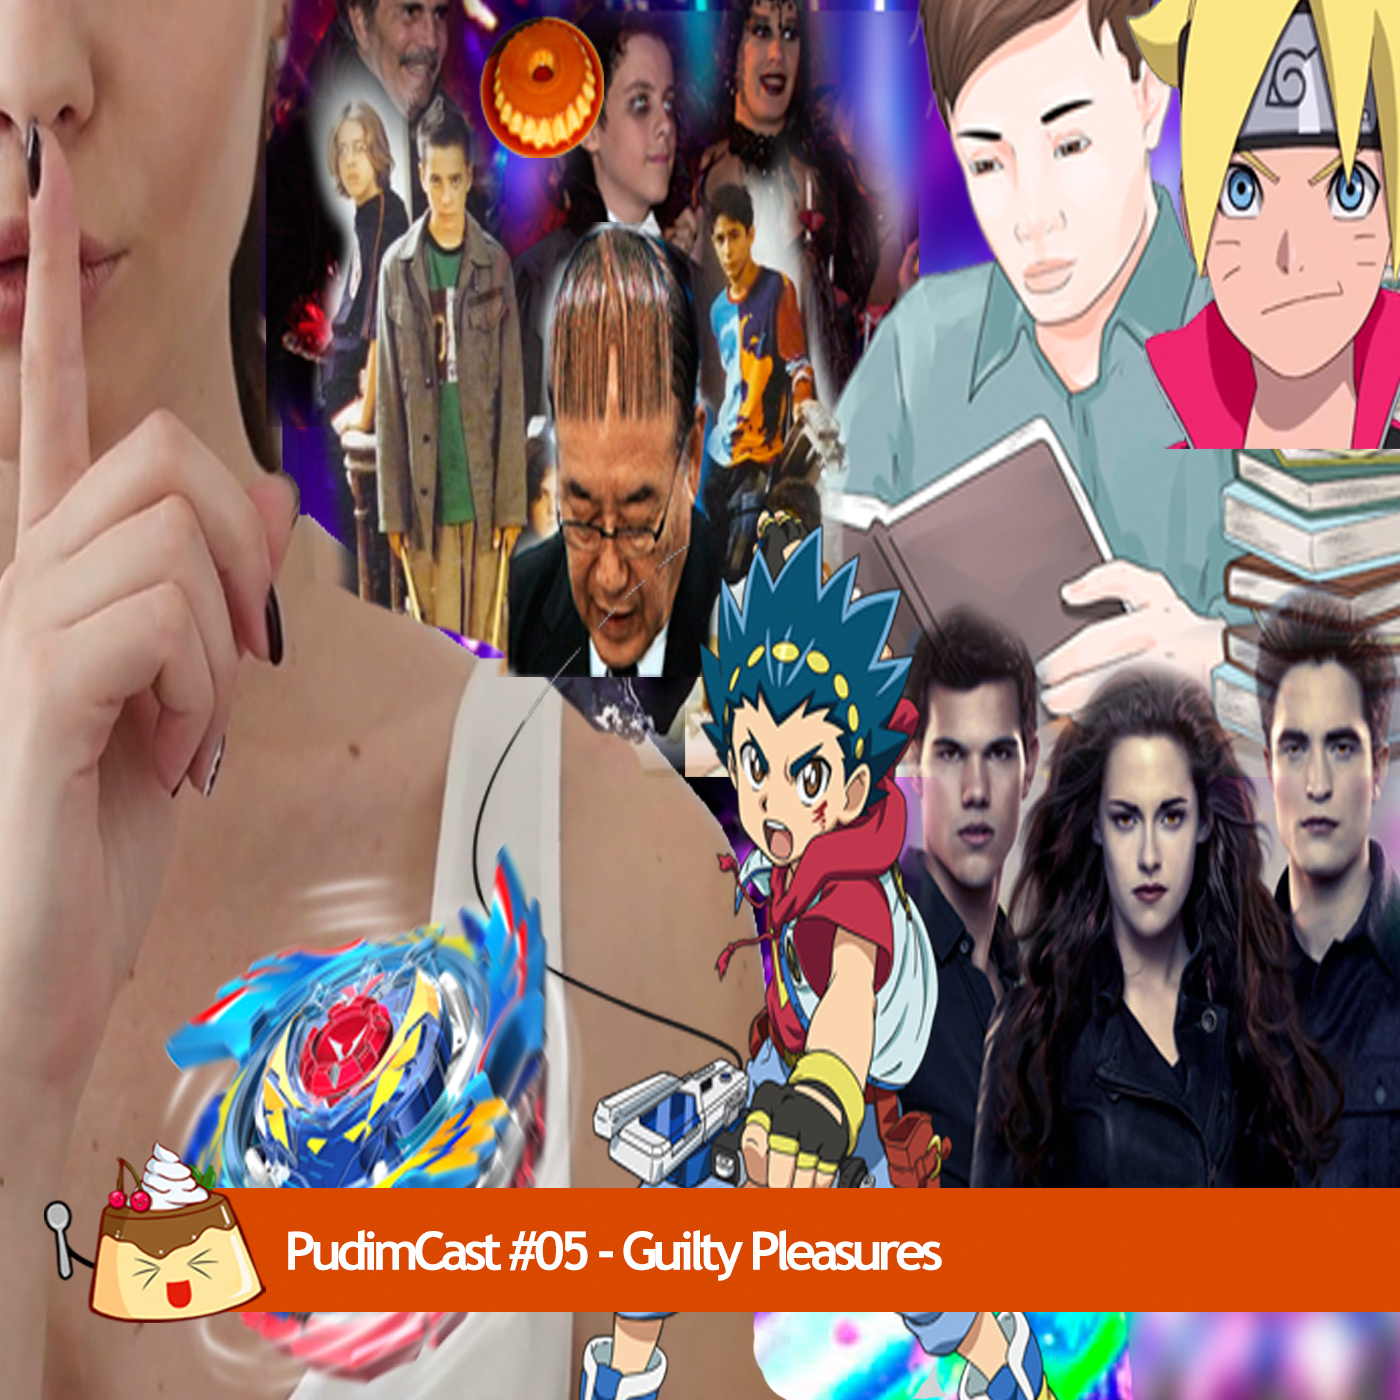 PudimCast #05 - Guilty Pleasures